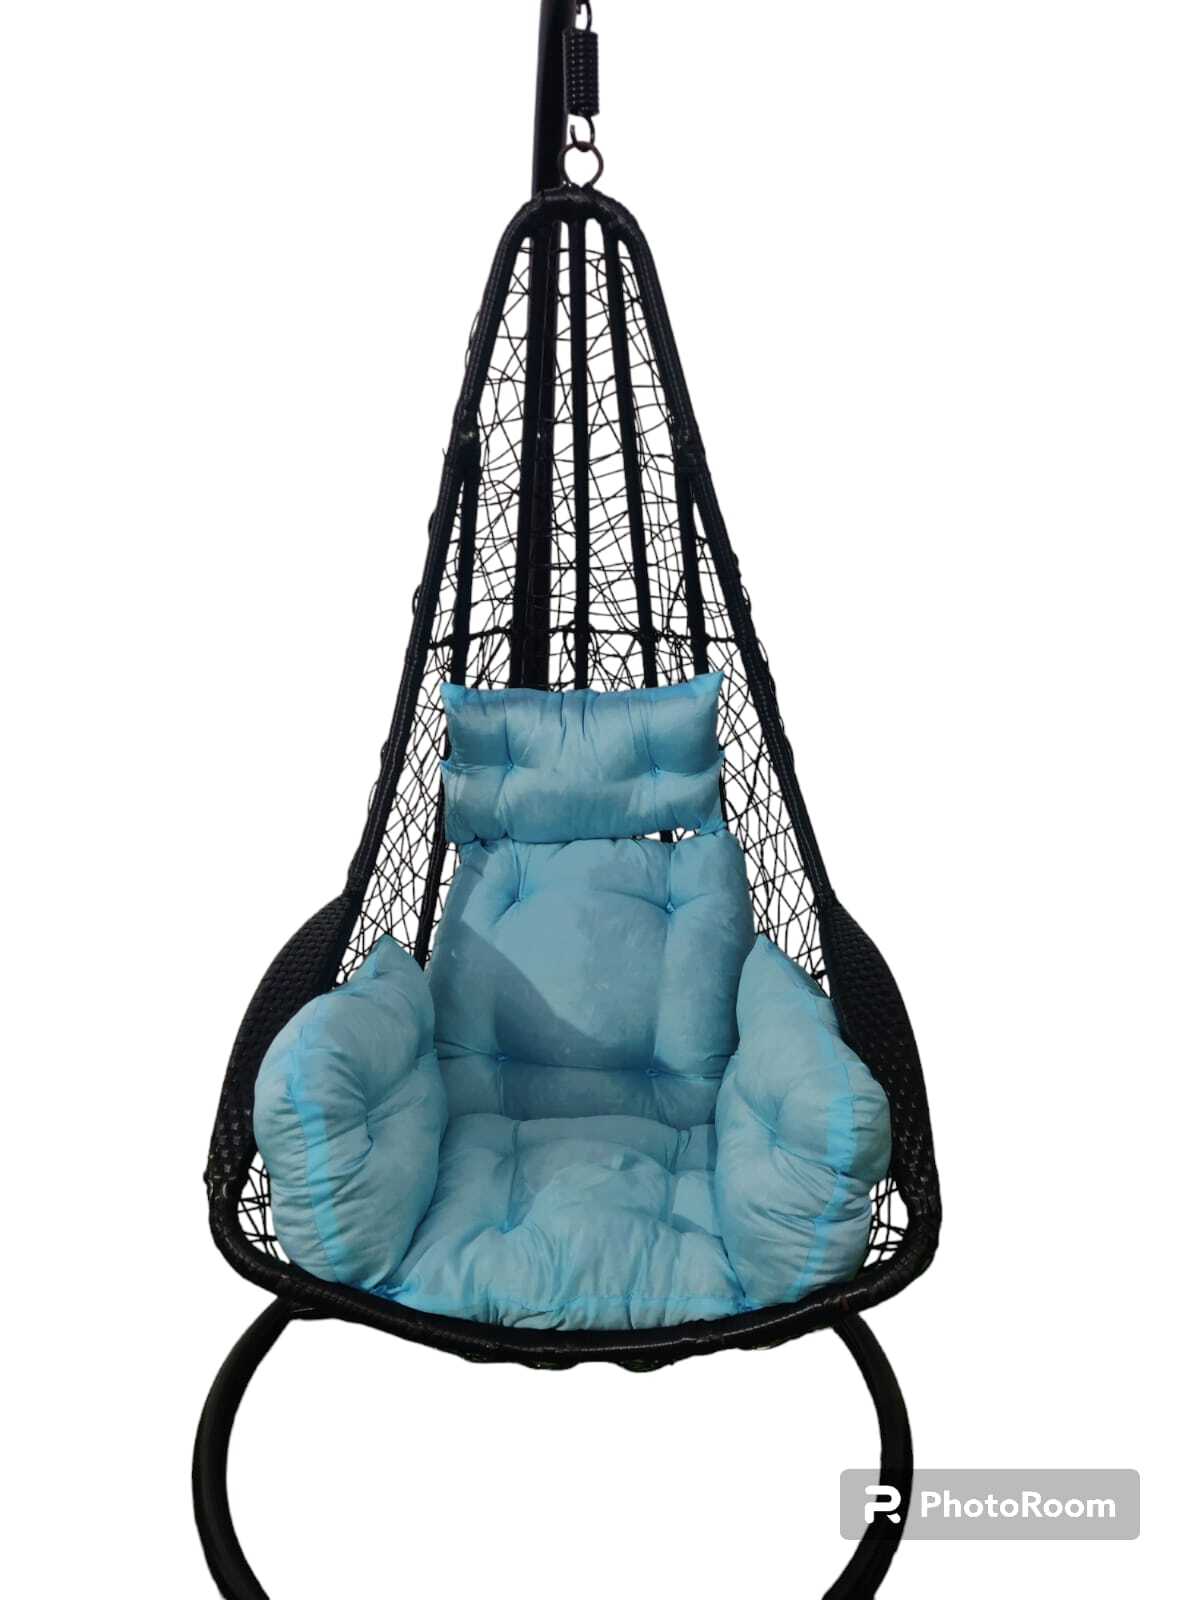 Single seater hammock Garden swing chair